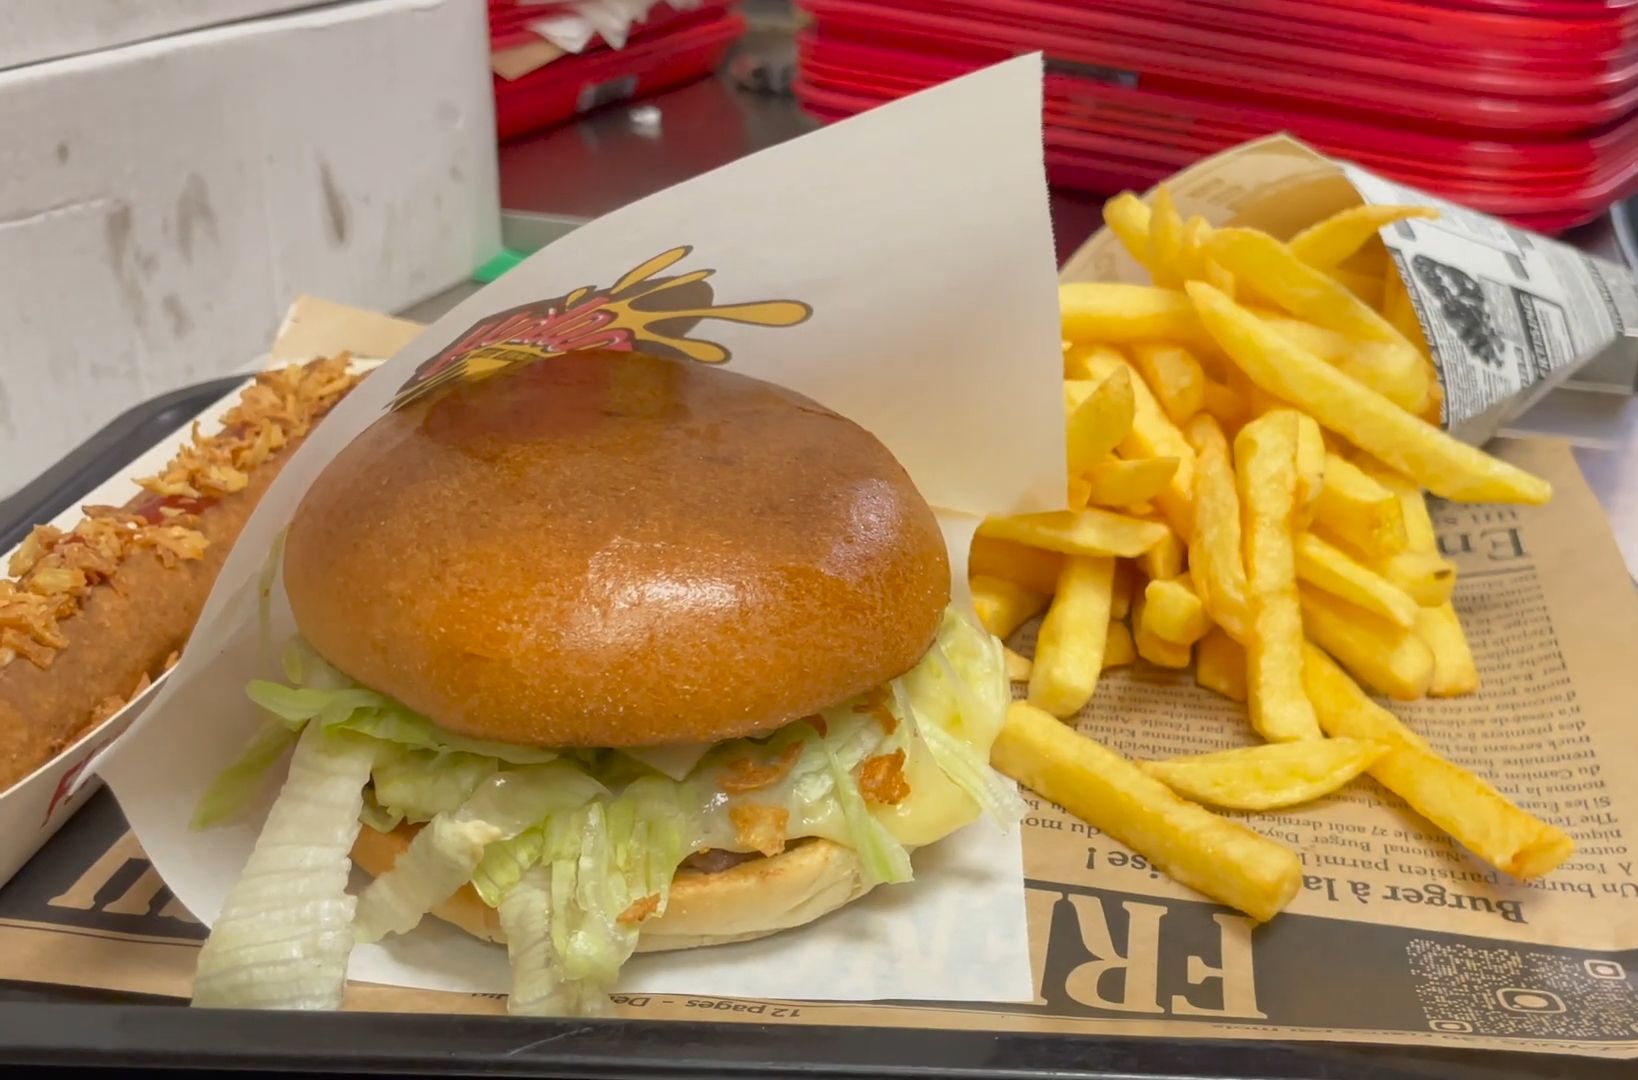 法国街头的比利时薯条汉堡:美食的奇妙交融